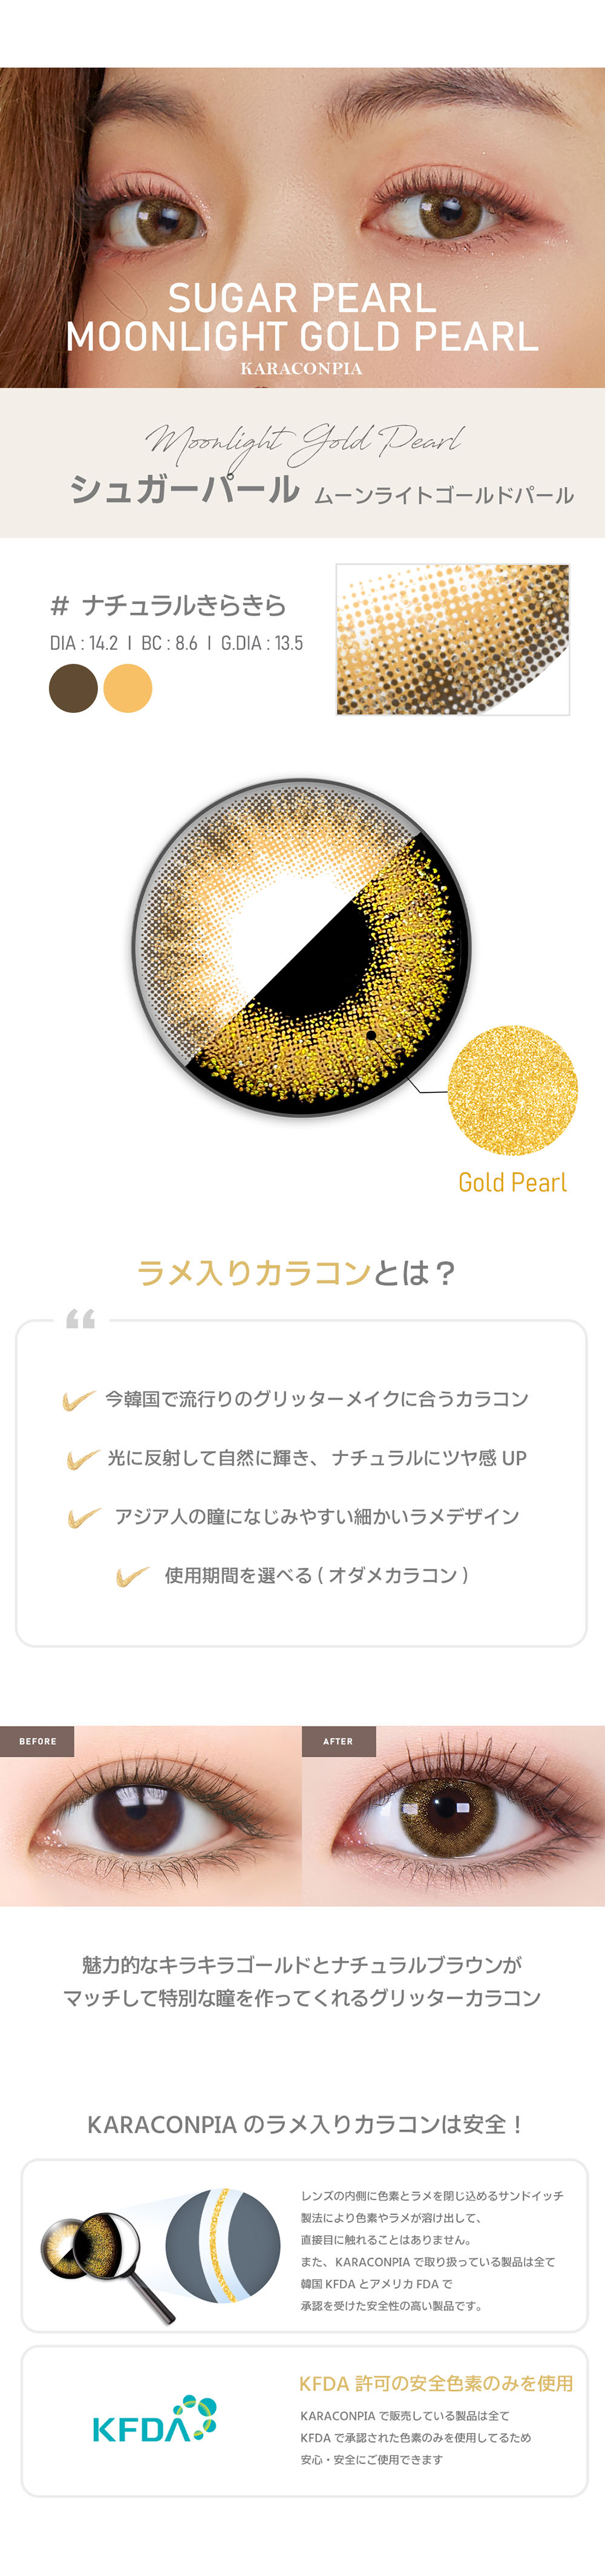 【オダメ】ムーンライトゴールドパール(Sugar pearl Moonlight Gold Pearl)